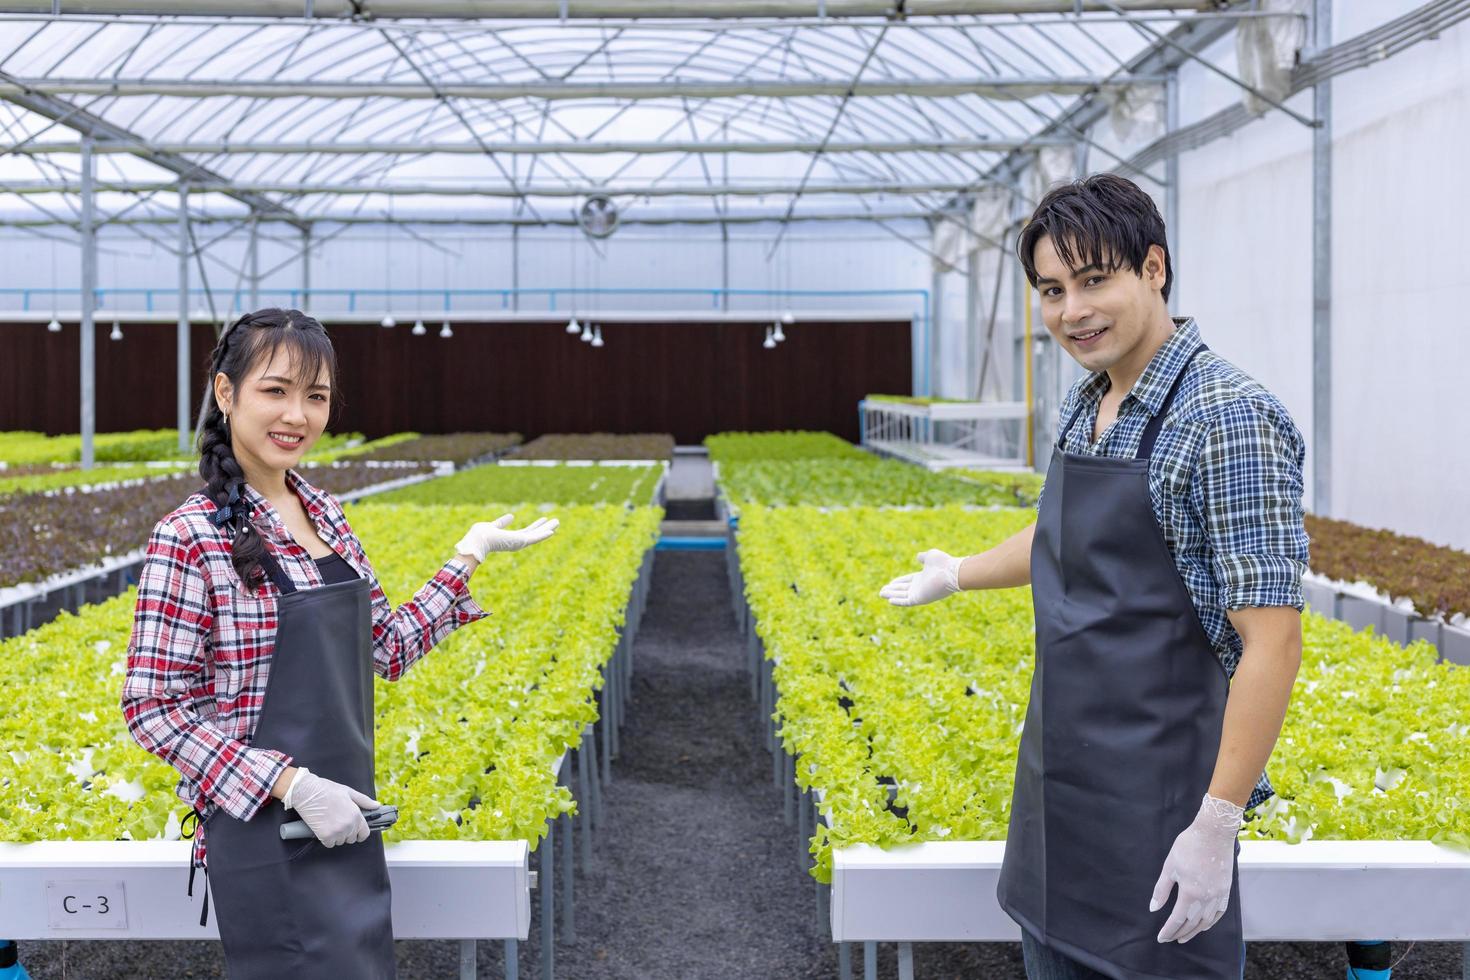 équipe d'agriculteurs locaux asiatiques cultivant de la salade de chêne vert dans la serre en utilisant une approche biologique du système d'eau hydroponique pour les entreprises familiales et en cueillant quelques-unes pour la vente photo